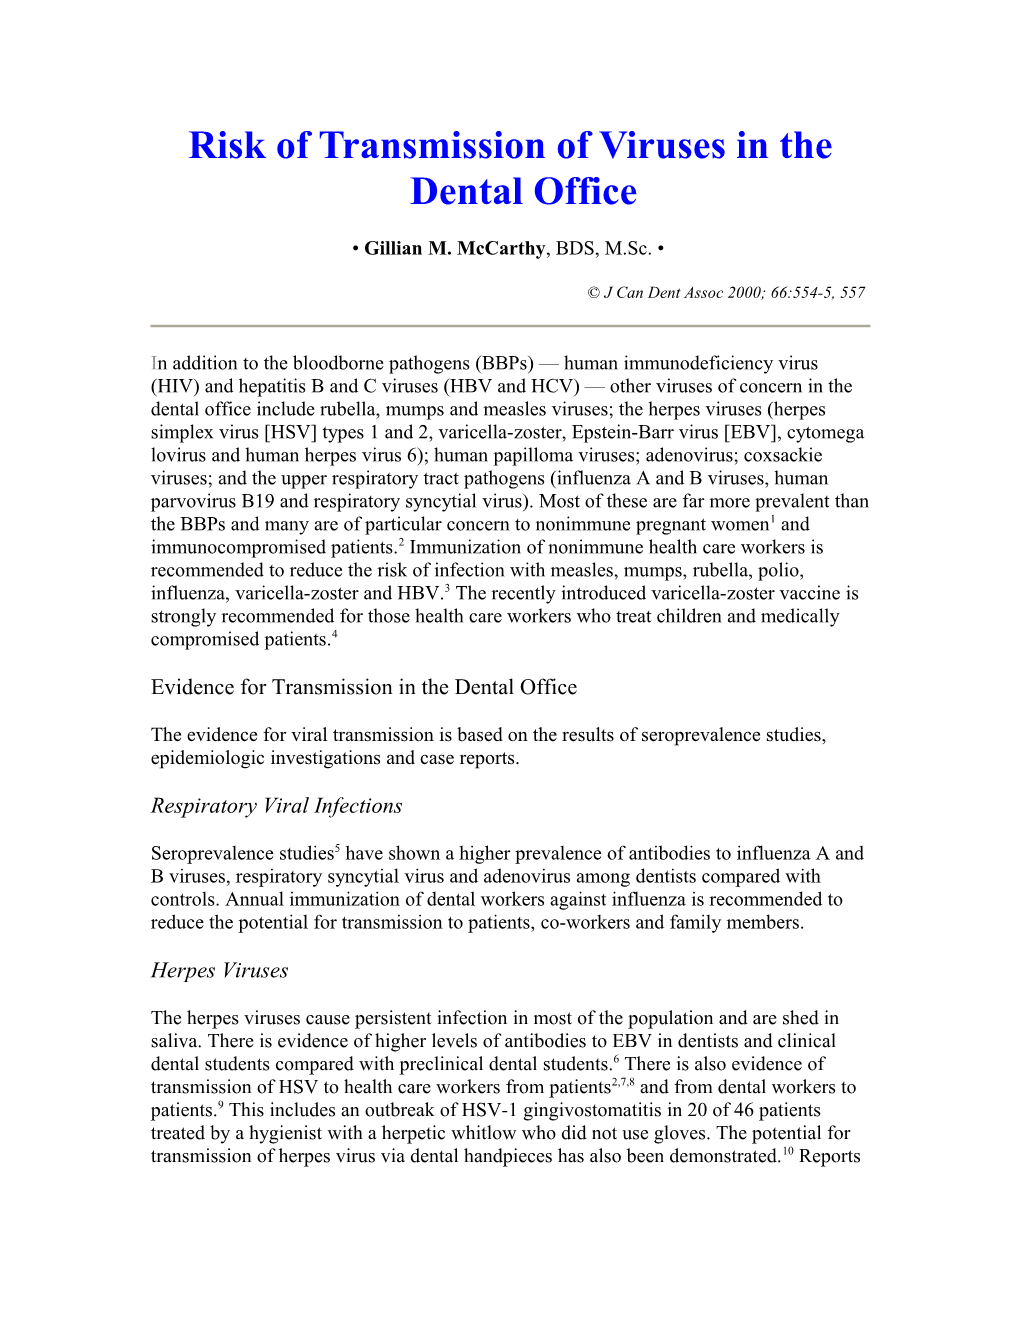 Risk of Transmission of Viruses in the Dental Office